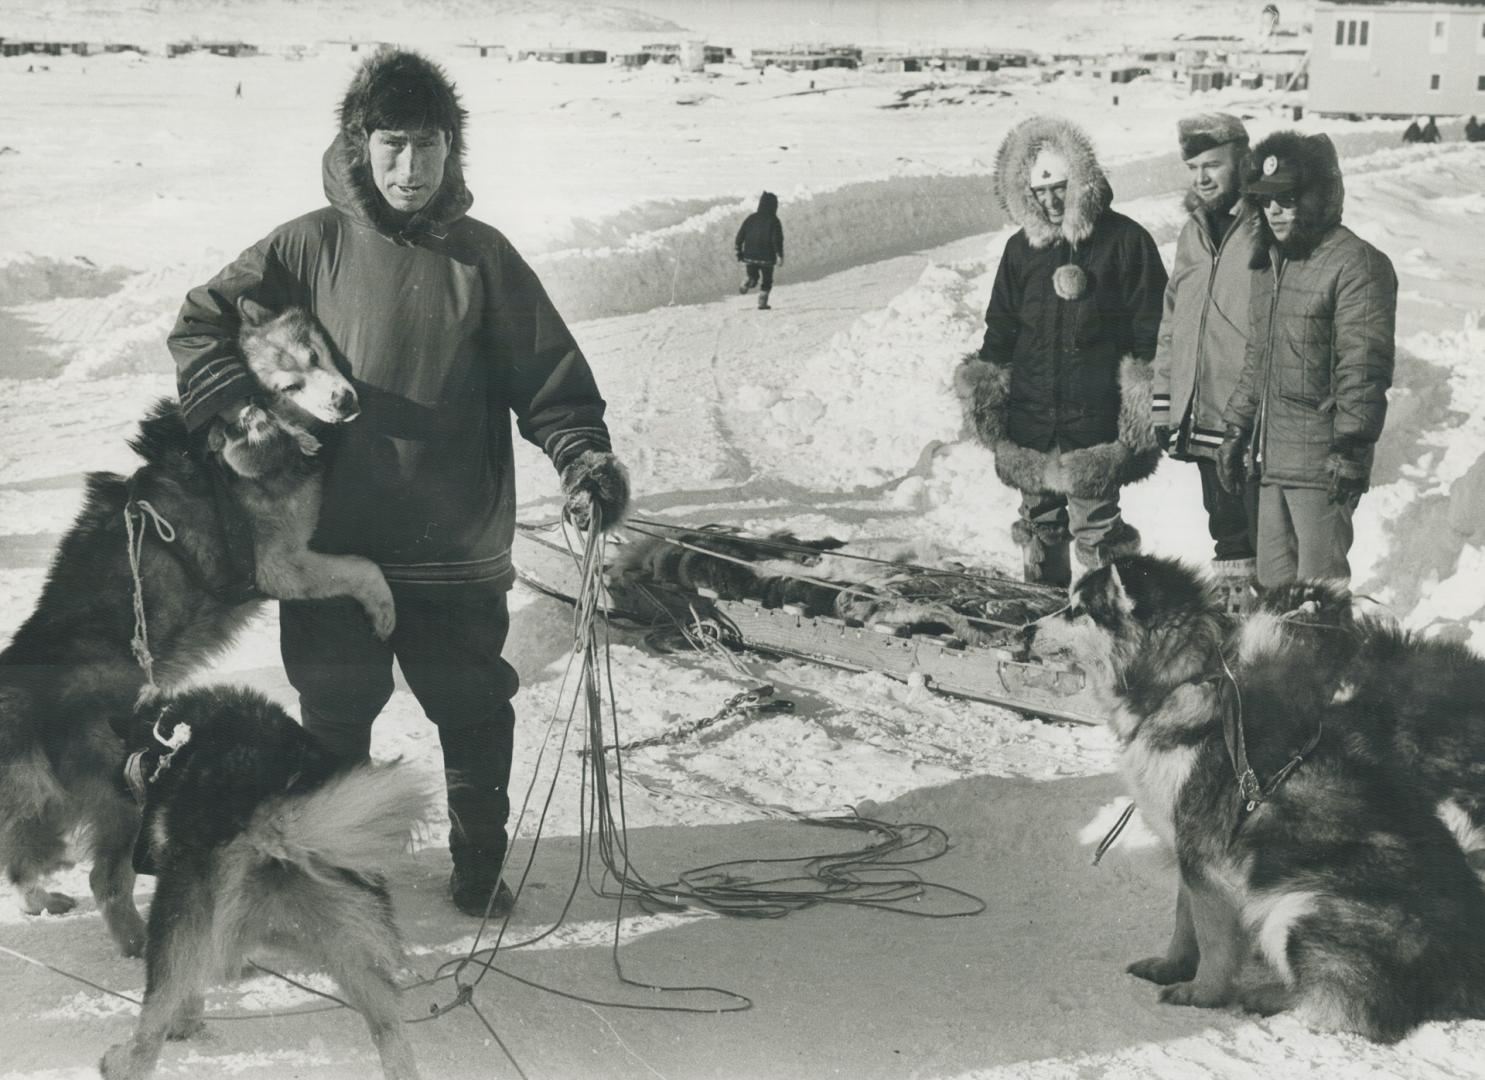 Pierre Trudeau's tour of the Arctic